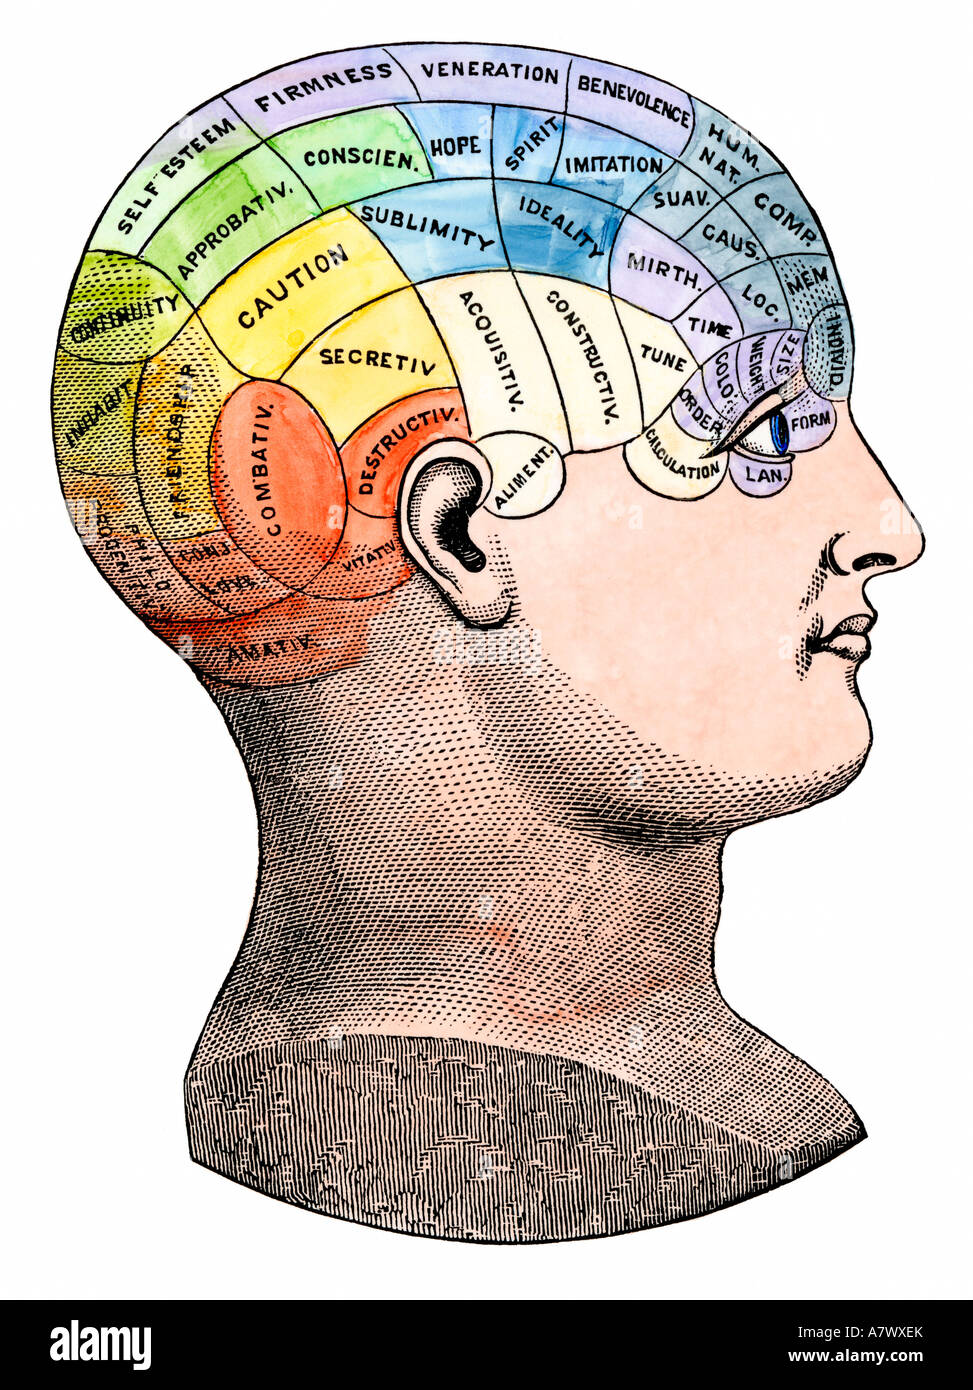 Phrenological vue de l'emplacement des différents organes de l'esprit dans la tête, vers 1890. À la main, gravure sur bois Banque D'Images